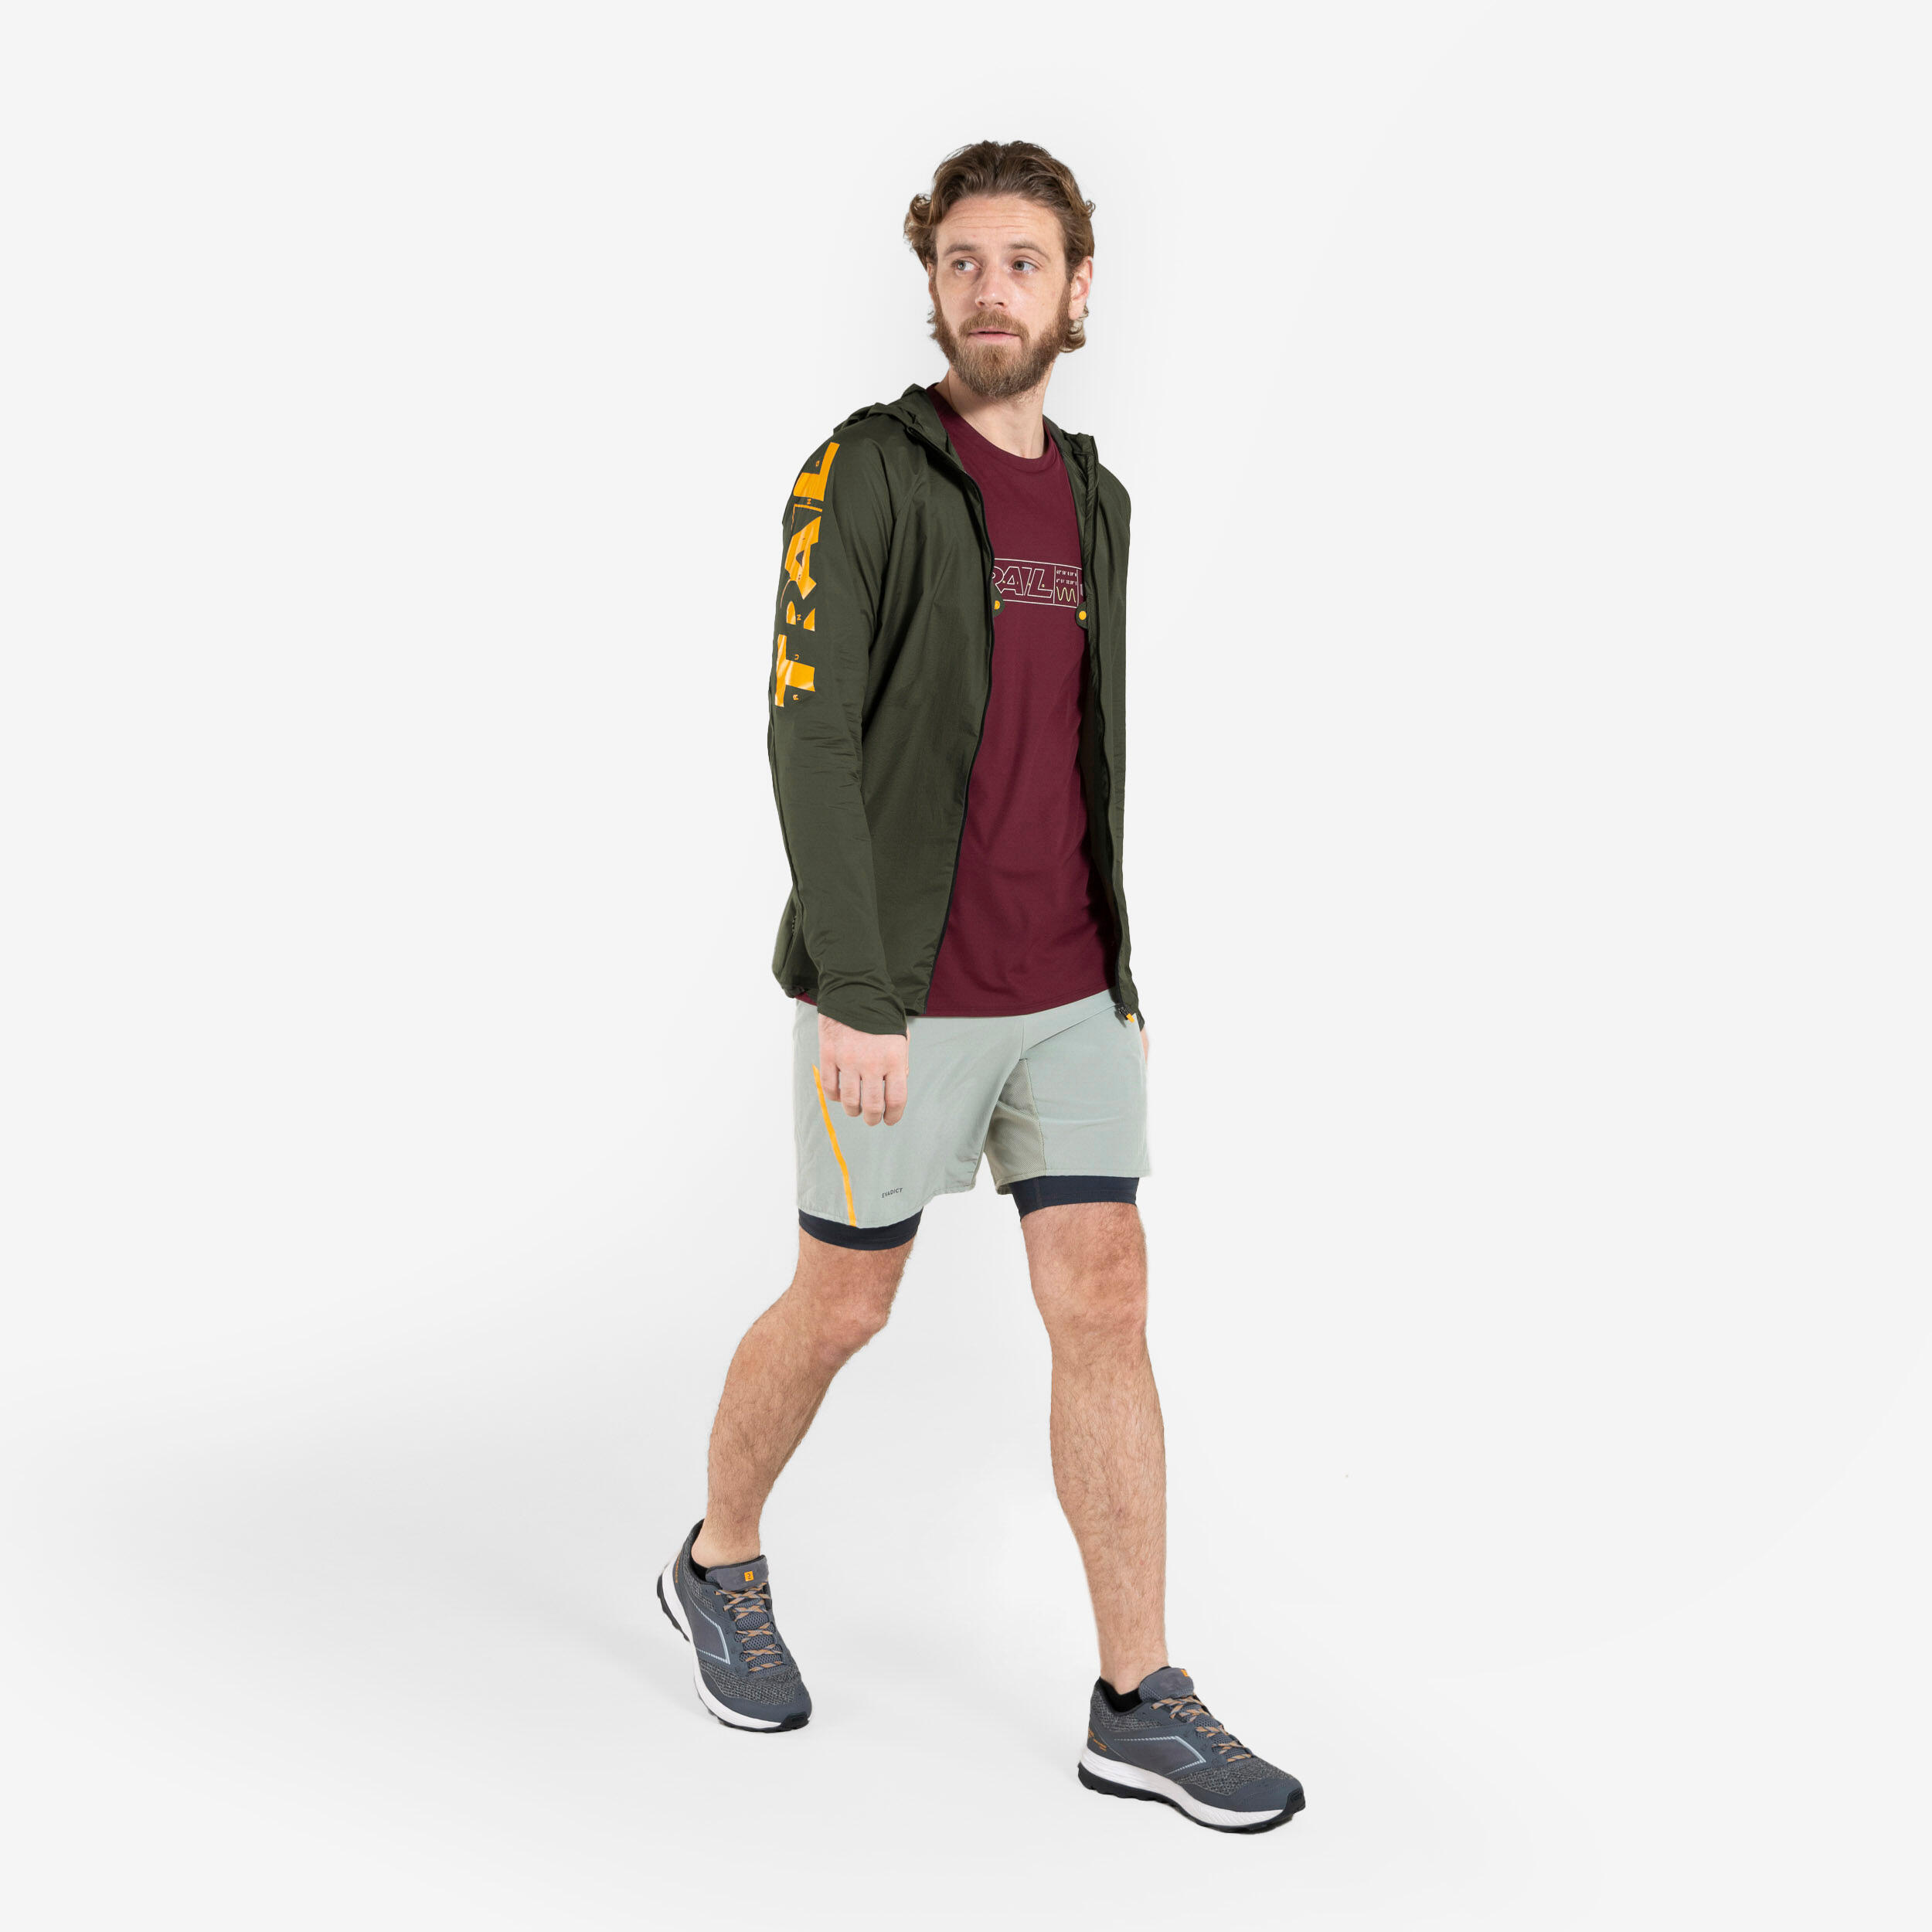 Men's Comfort Trail Running Shorts/Tight Shorts - Khaki